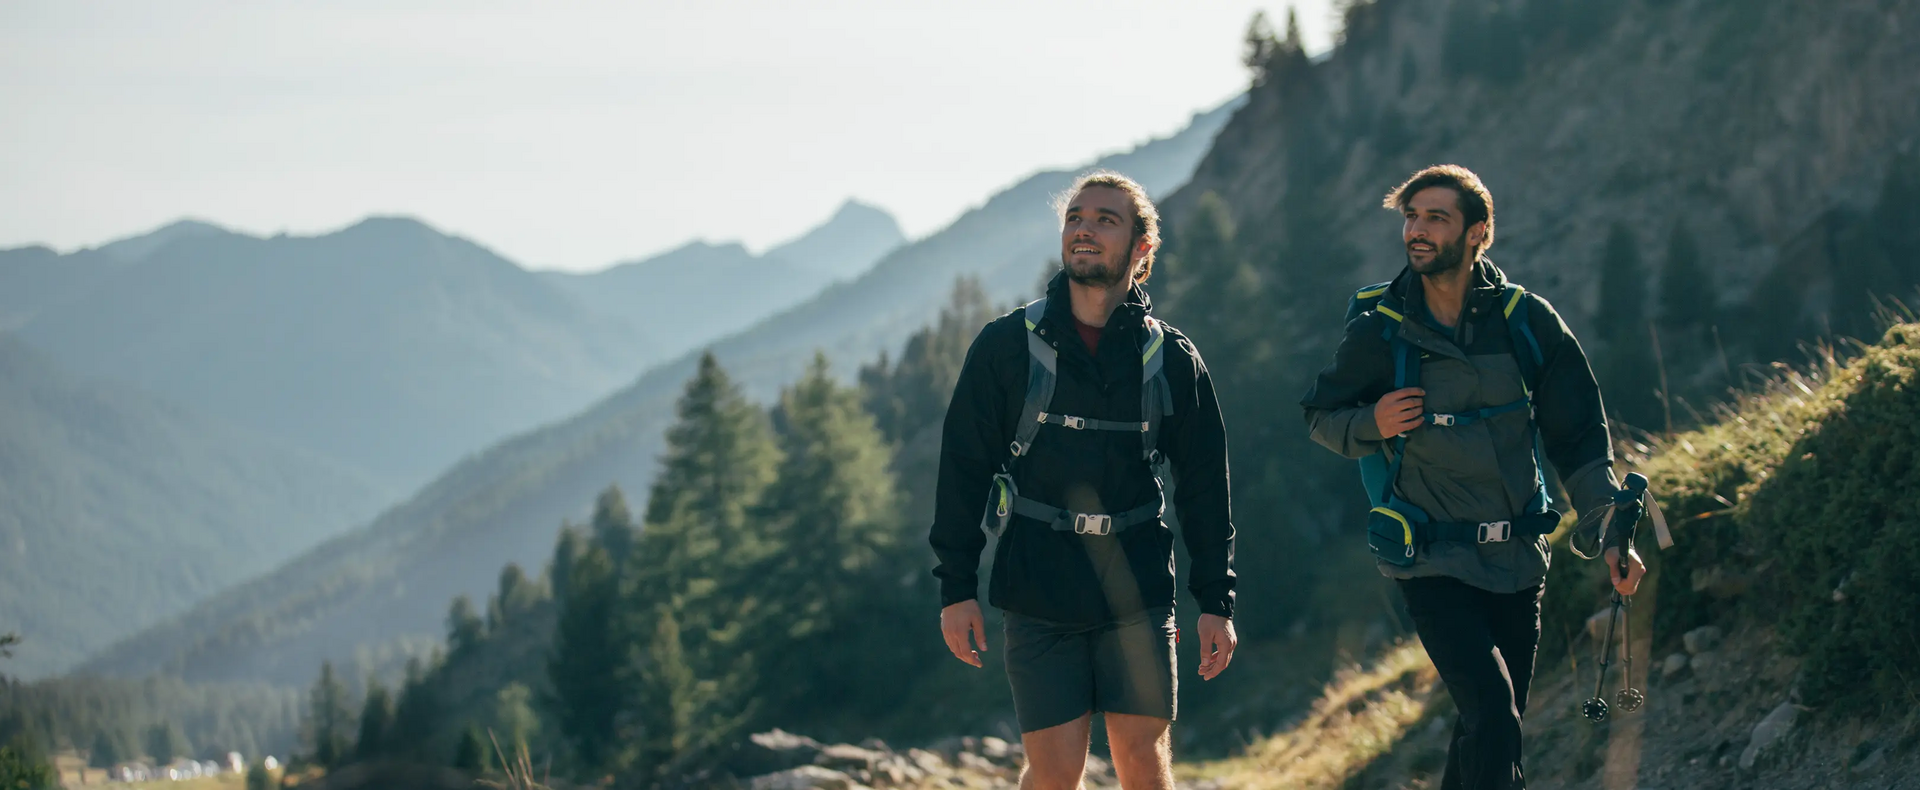 mężczyźni podczas wycieczki trekkingowej na szlaku górskim